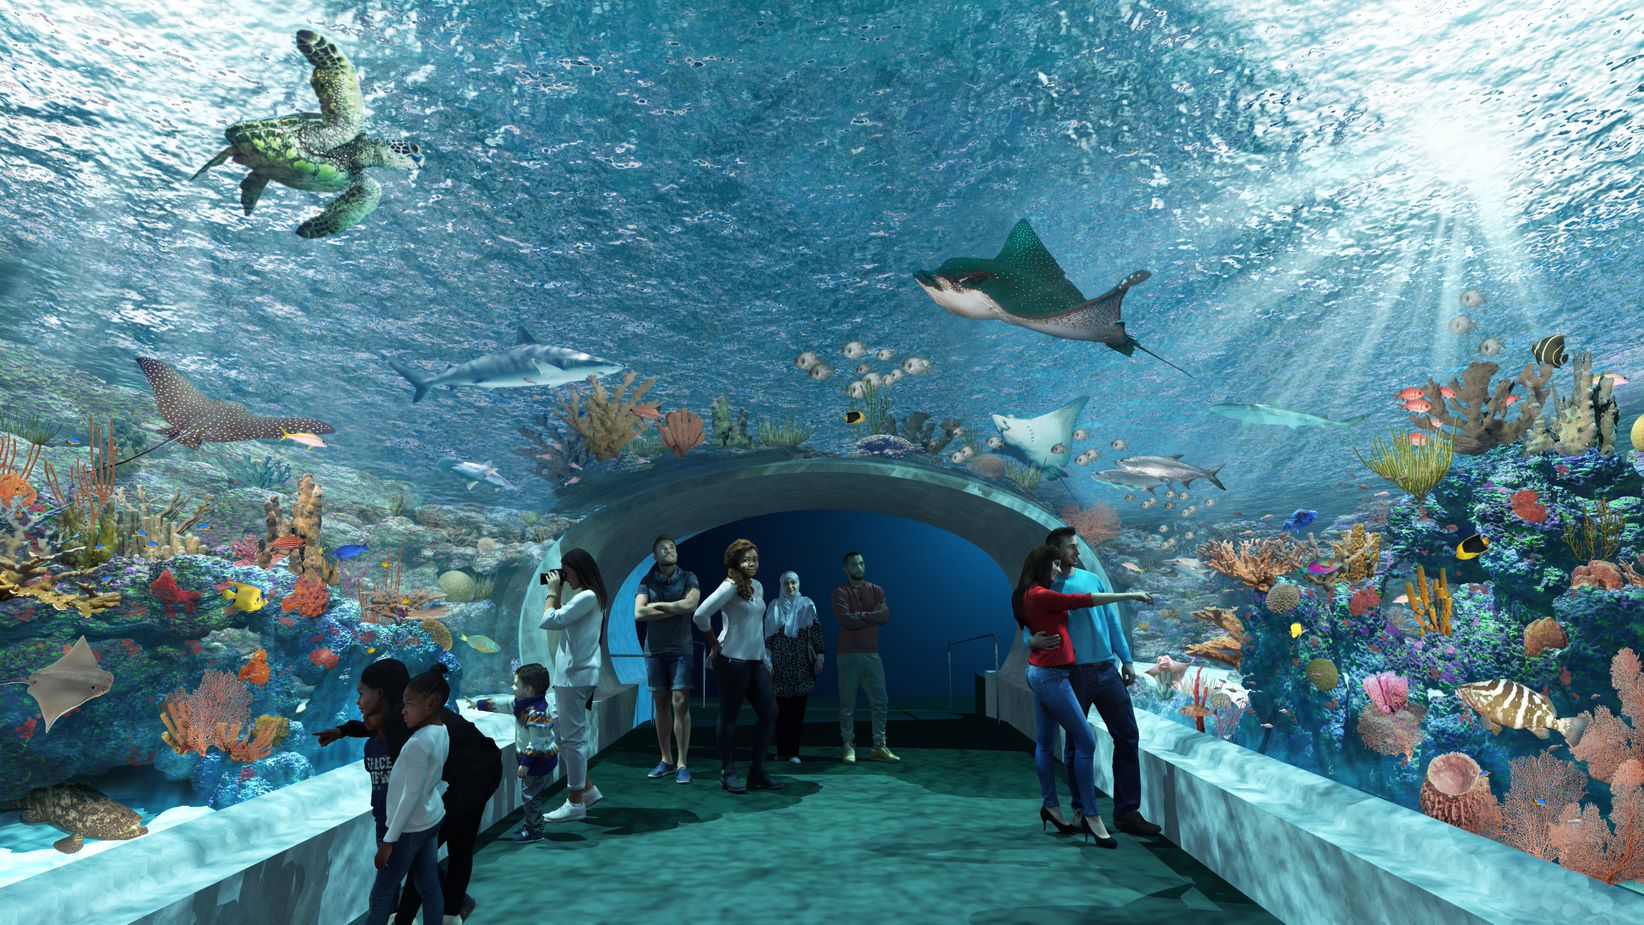 How Long Does Shedd Aquarium Take? 